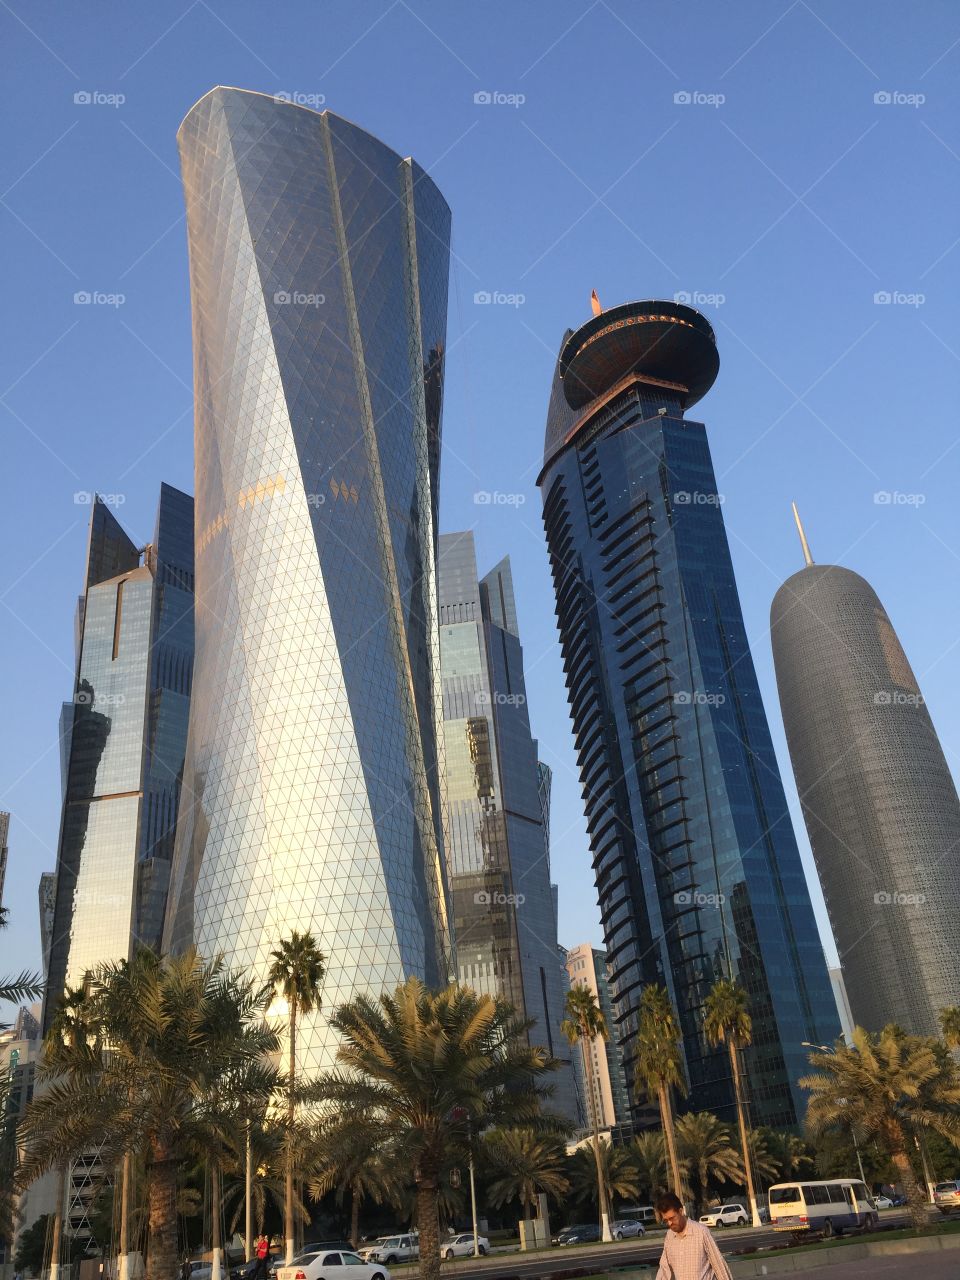 Best of Qatar